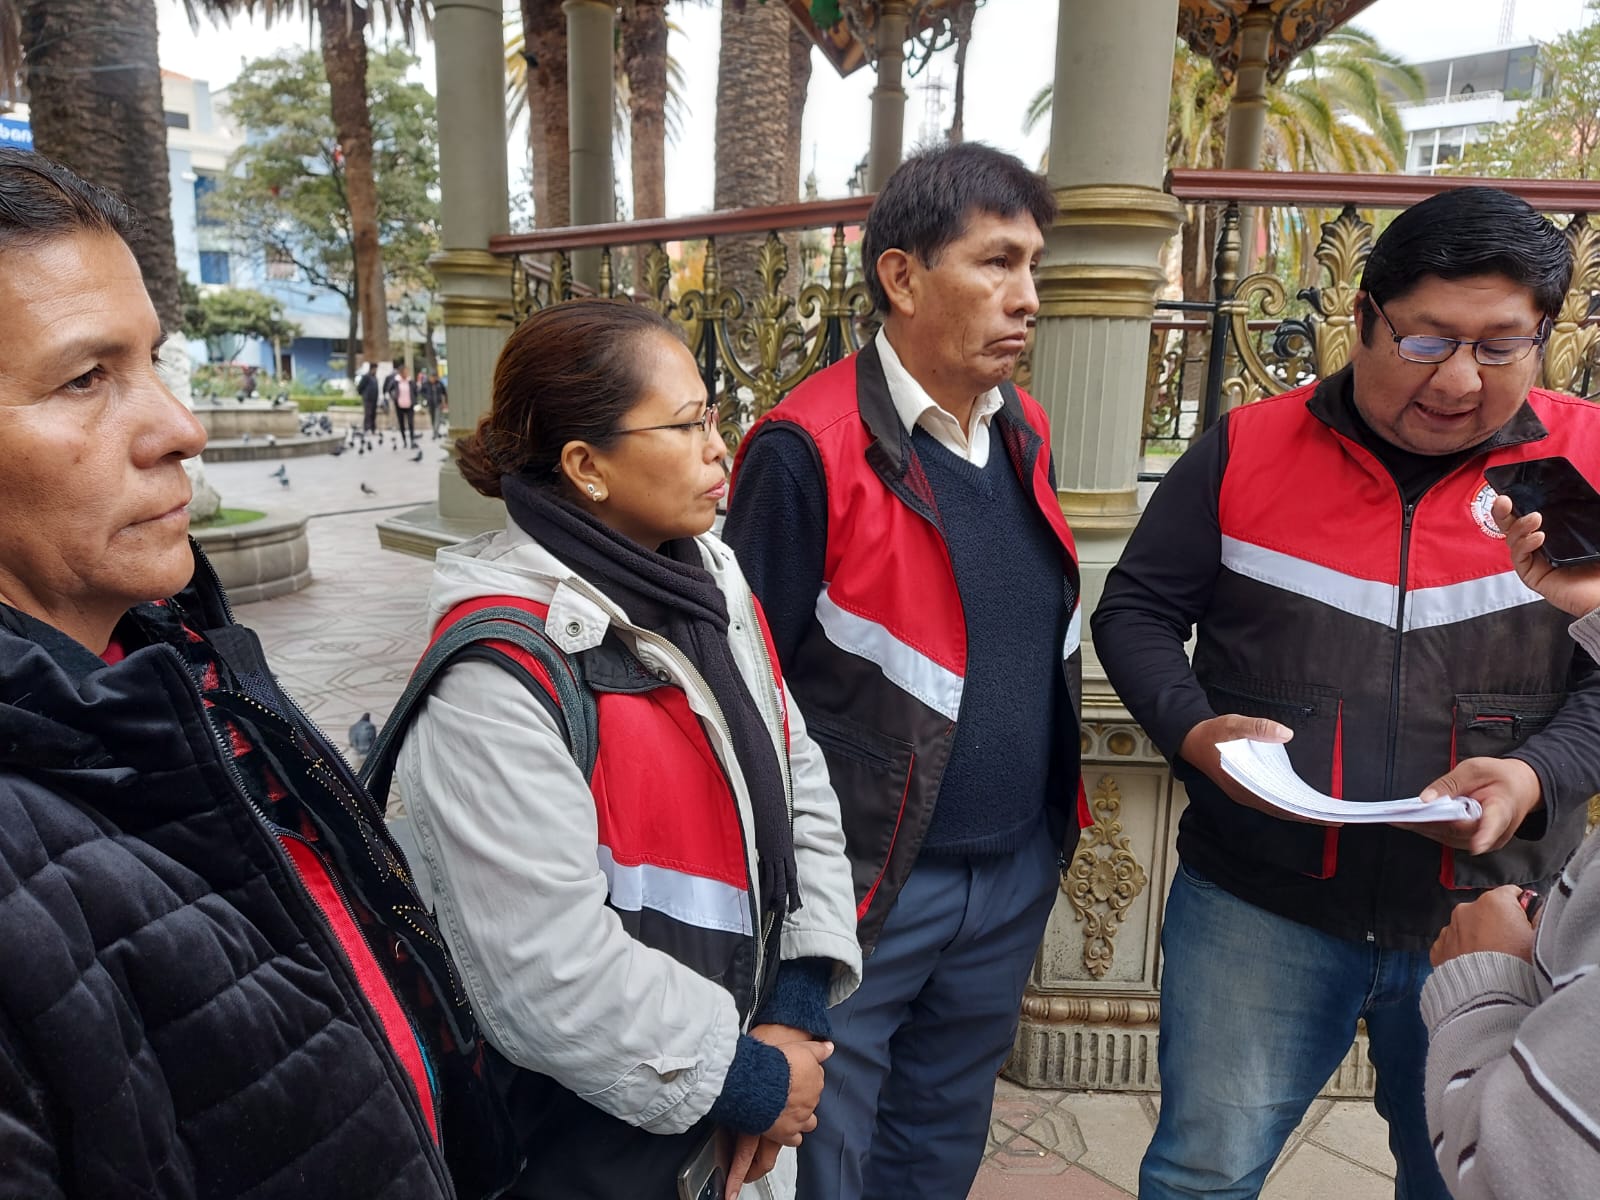 “Falta de servicios básicos en barrios de Tarija sigue sin solución”